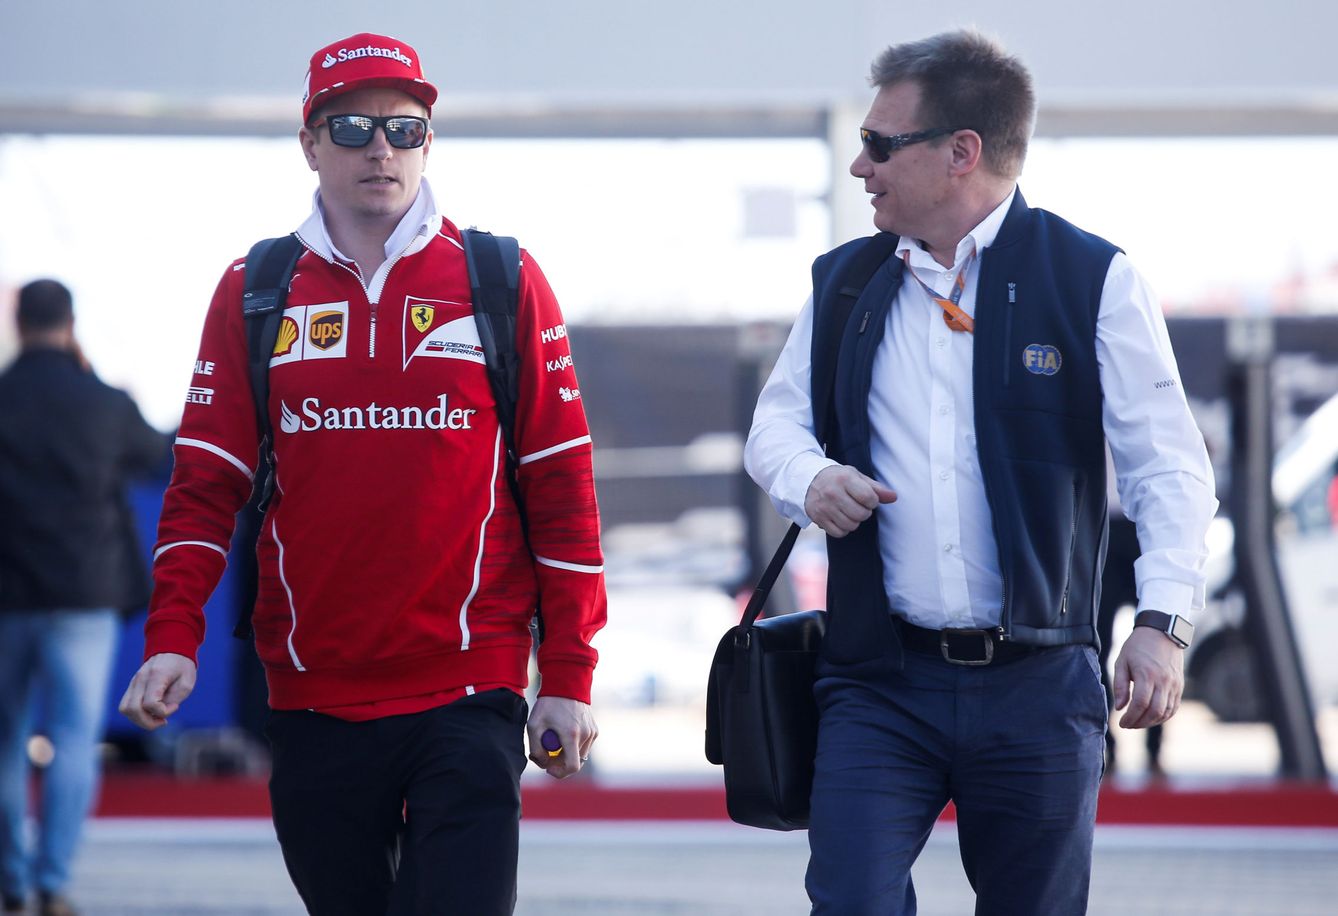 Mika Salo (derecha) fue uno de los comisarios encargados de tomar la decisión sobre Verstappen el pasado domingo. (Reuters)